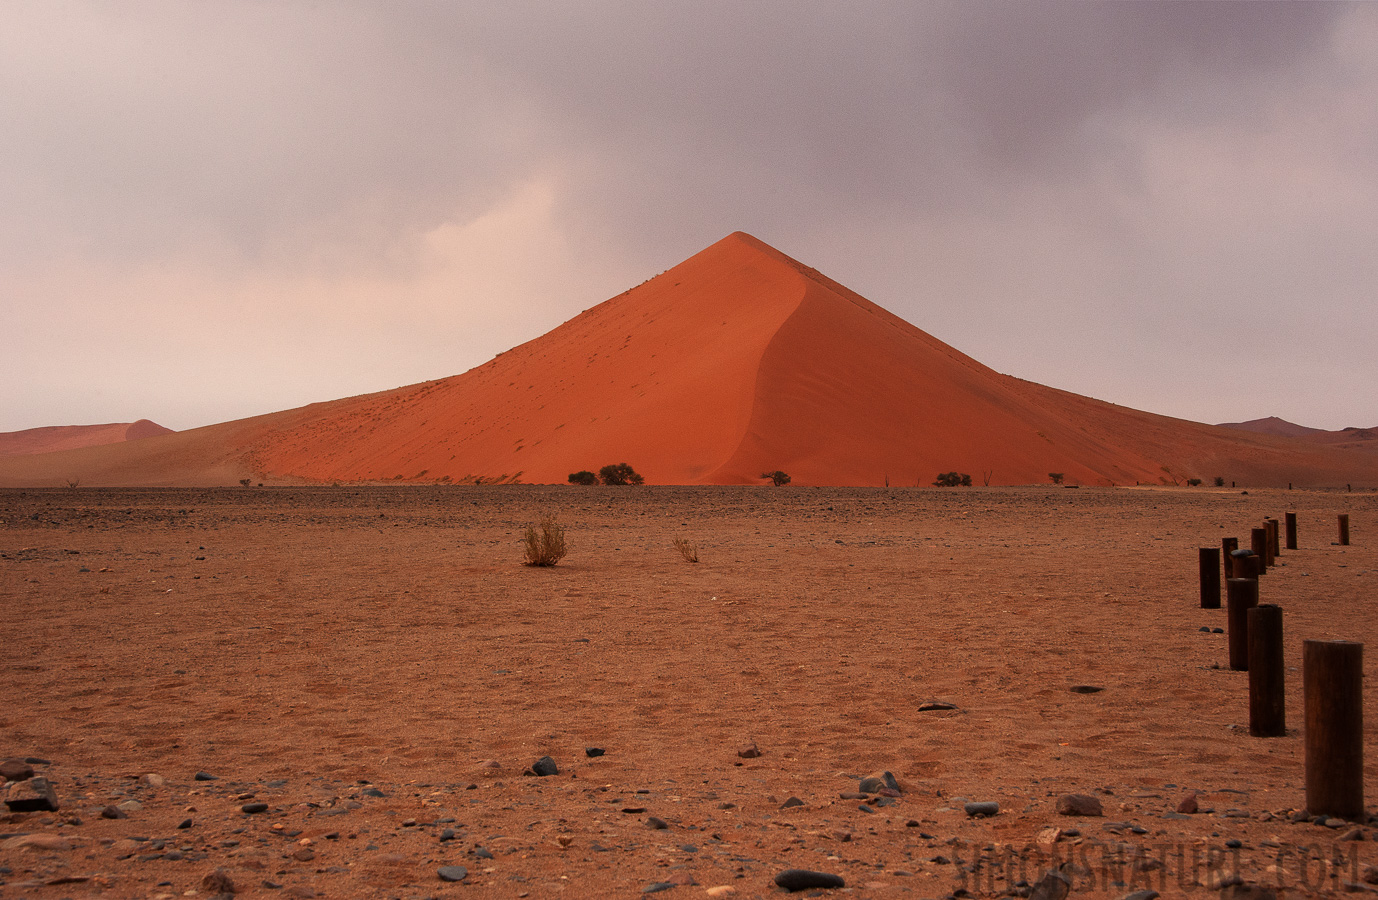 Namib-Naukluft National Park [48 mm, 1/80 sec at f / 14, ISO 1250]